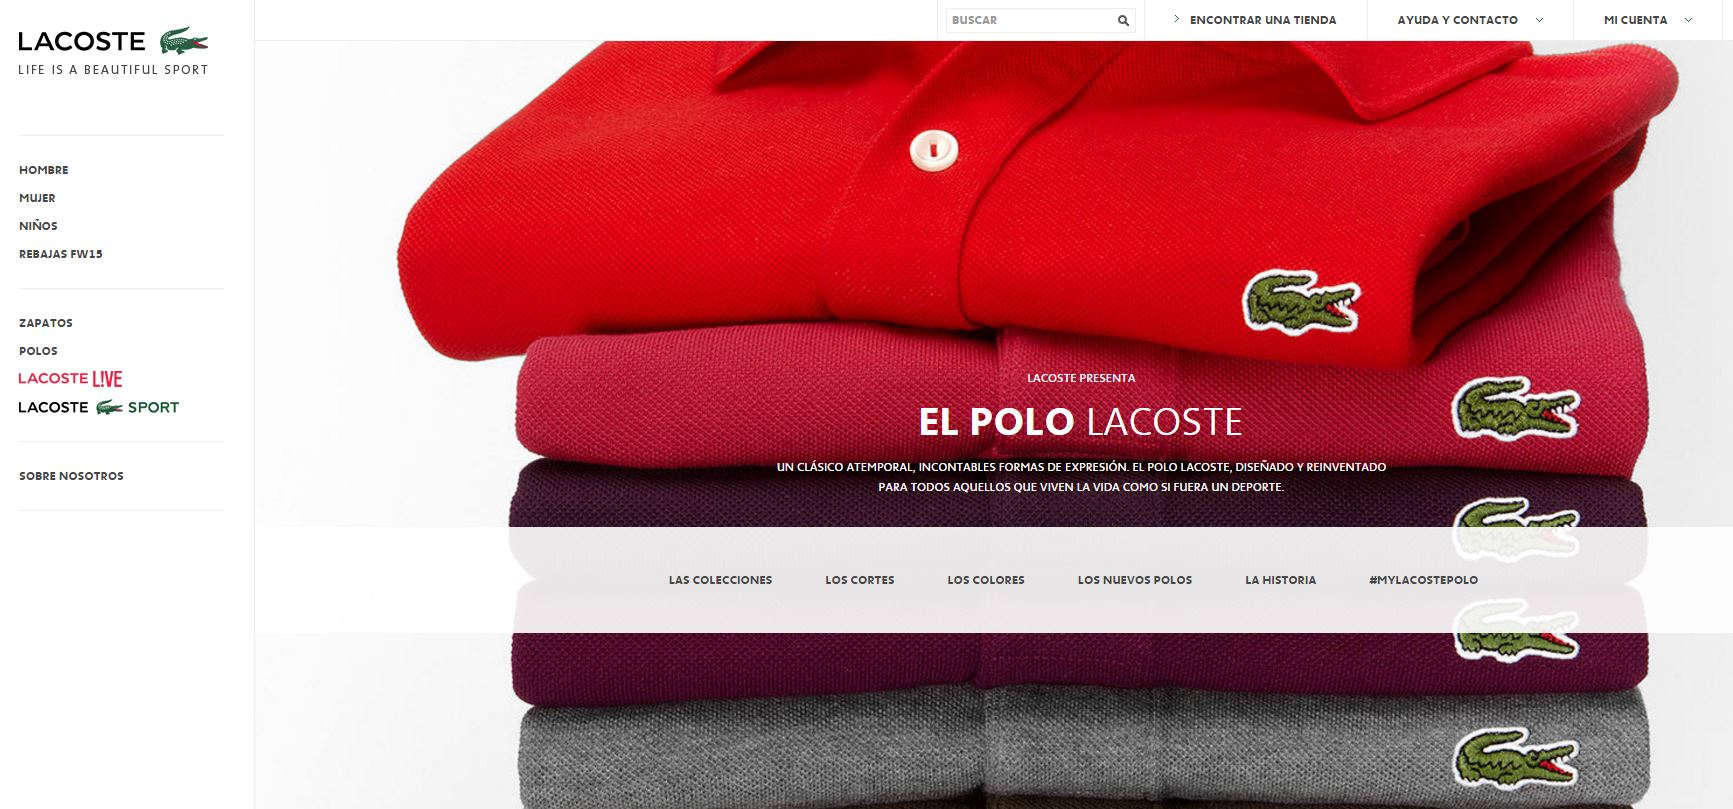 Lacoste abre su tienda online para España - Blog Trilogi | The eCommerce